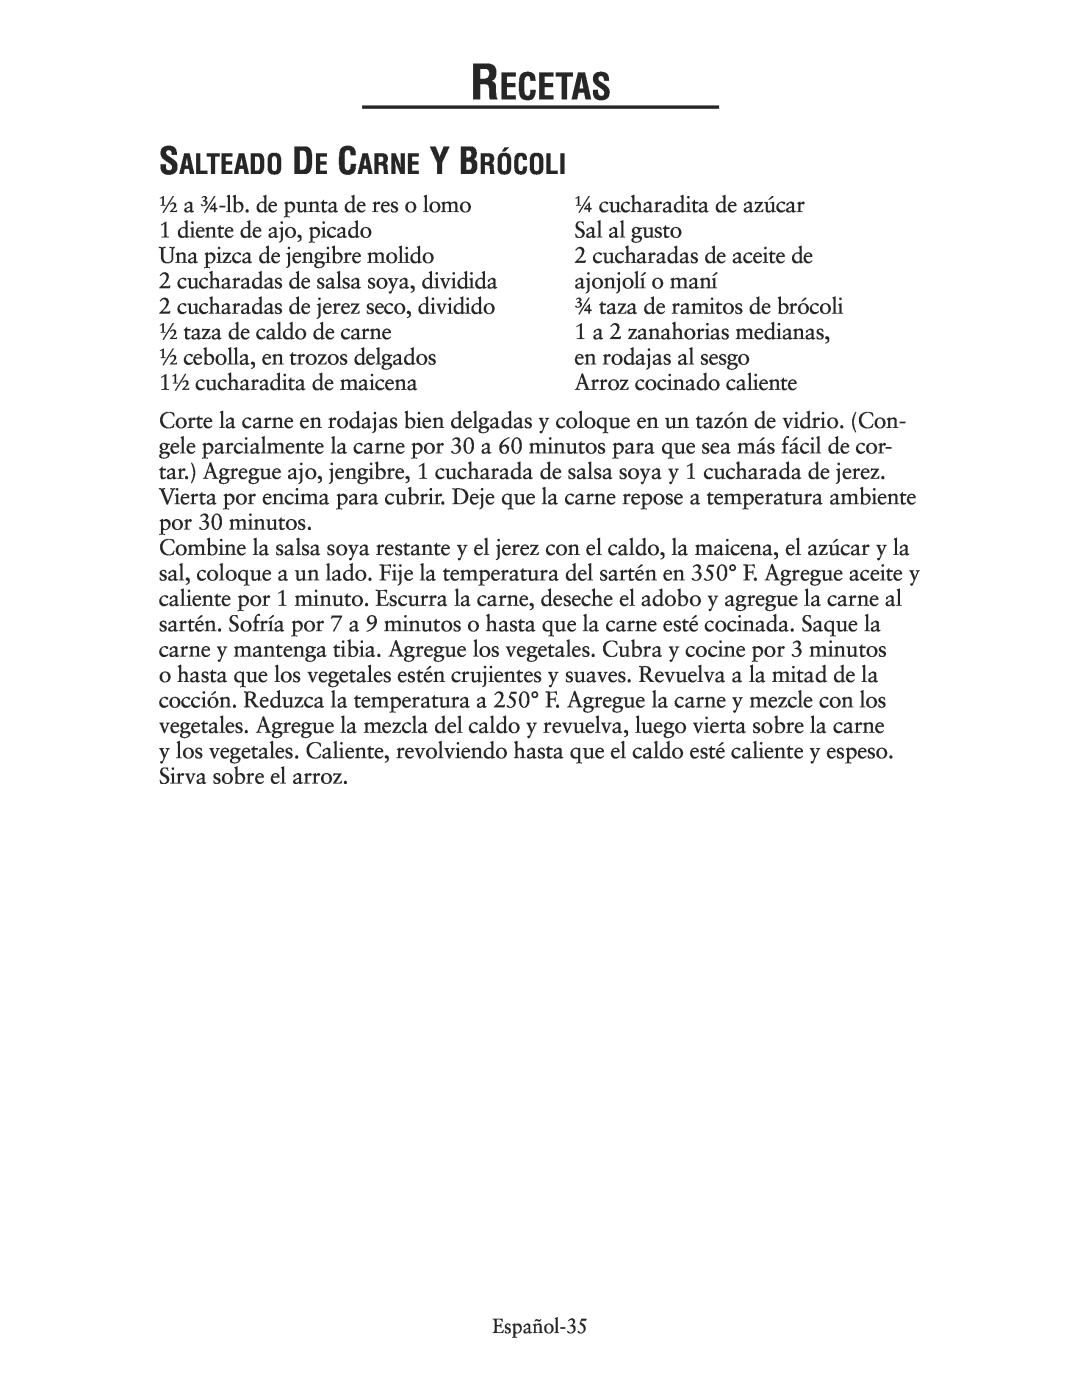 Oster CKSTSKRM20 user manual Salteado De Carne Y Brócoli, Recetas 